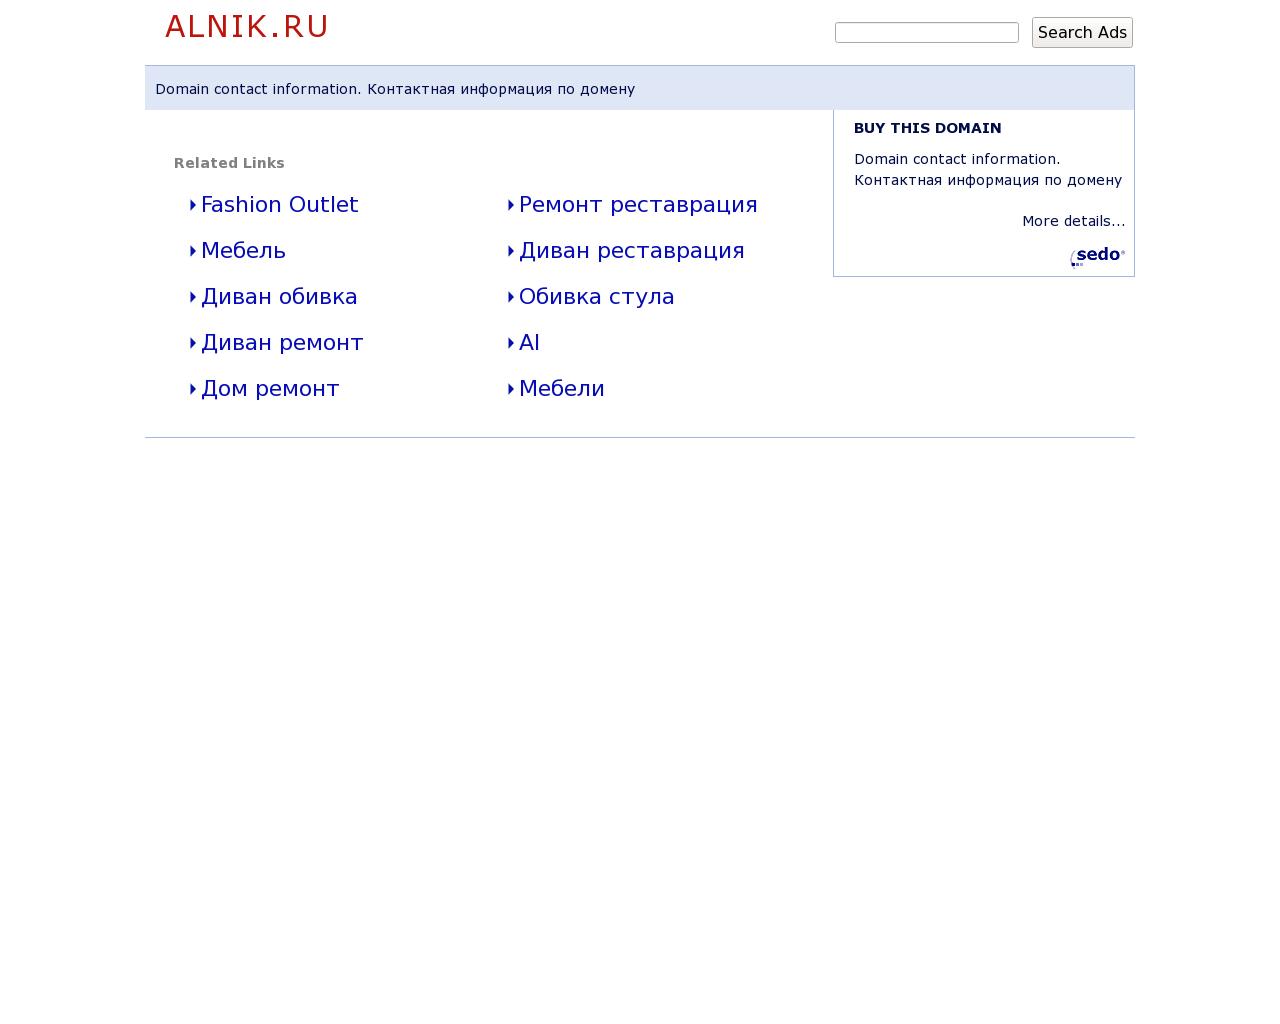 Изображение сайта alnik.ru в разрешении 1280x1024